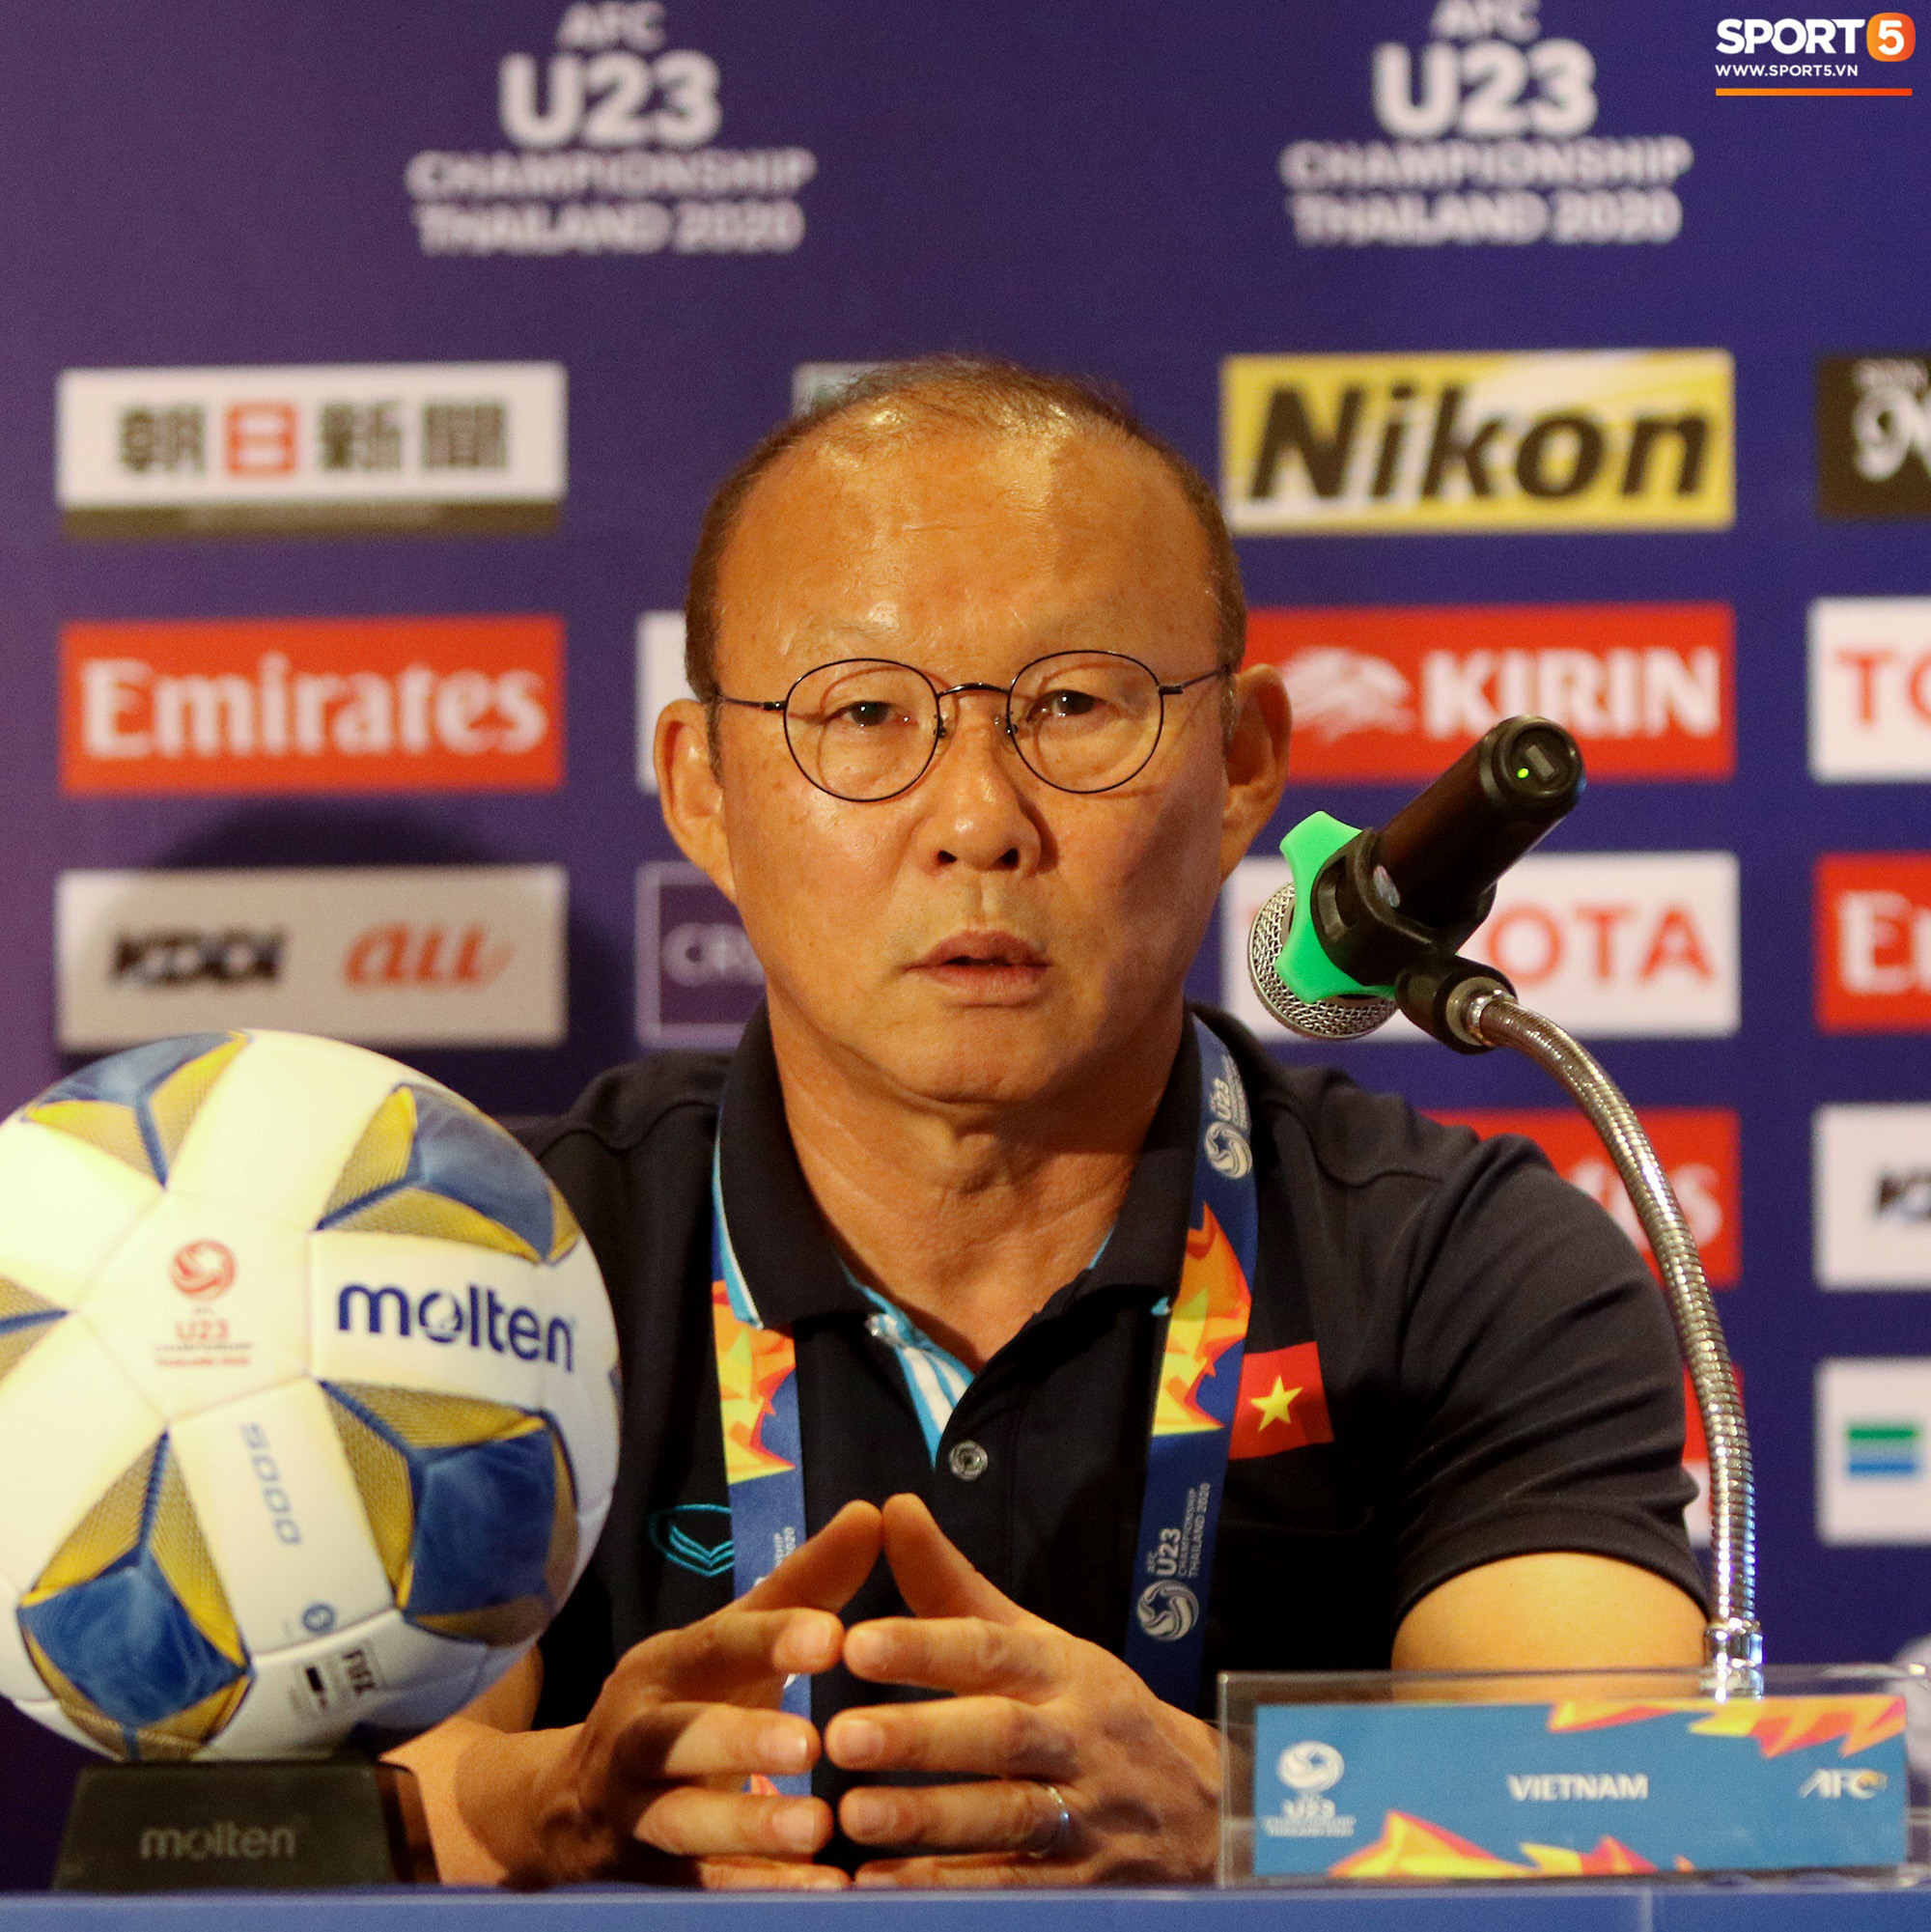 HLV Park Hang-seo tung đòn tâm lý chiến lược: Để xem U23 UAE biết về U23 Việt Nam được bao nhiêu - Ảnh 1.